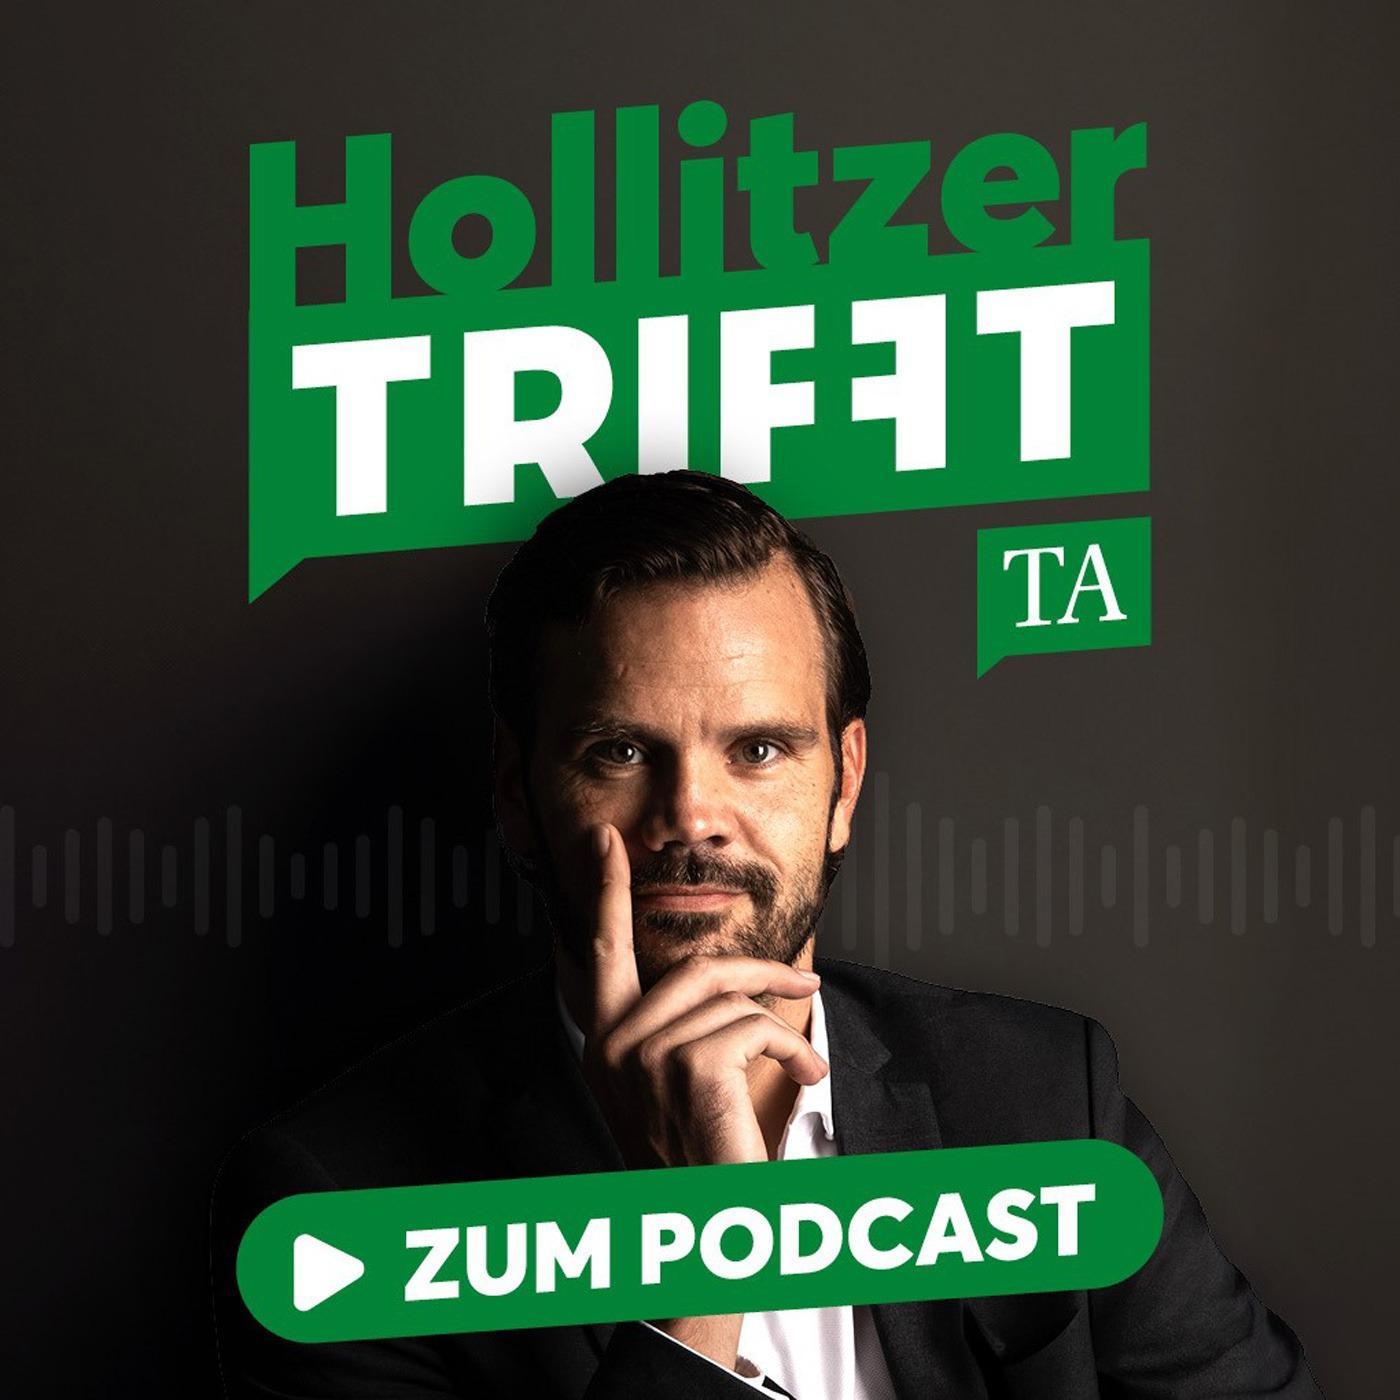 "Hollitzer trifft"-TV zum Superwahljahr in Thüringen: "Programmdebatte erinnert an politischen Aufbruch der Wendezeit"